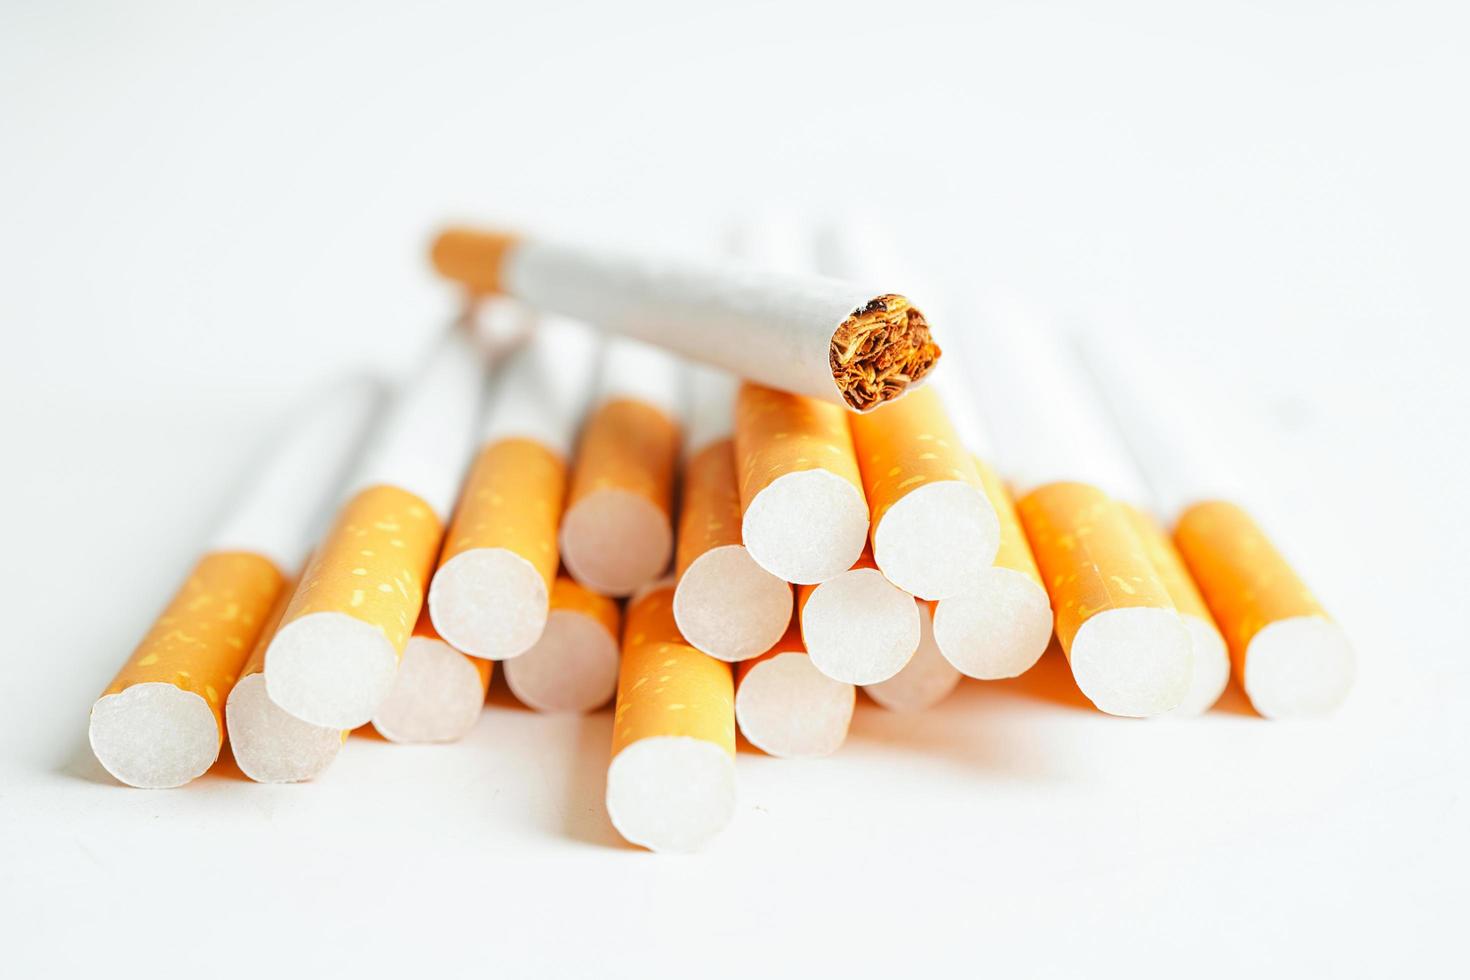 cigarro isolado no fundo branco com traçado de recorte, rolo de tabaco em papel com tubo de filtro, conceito de não fumar. foto